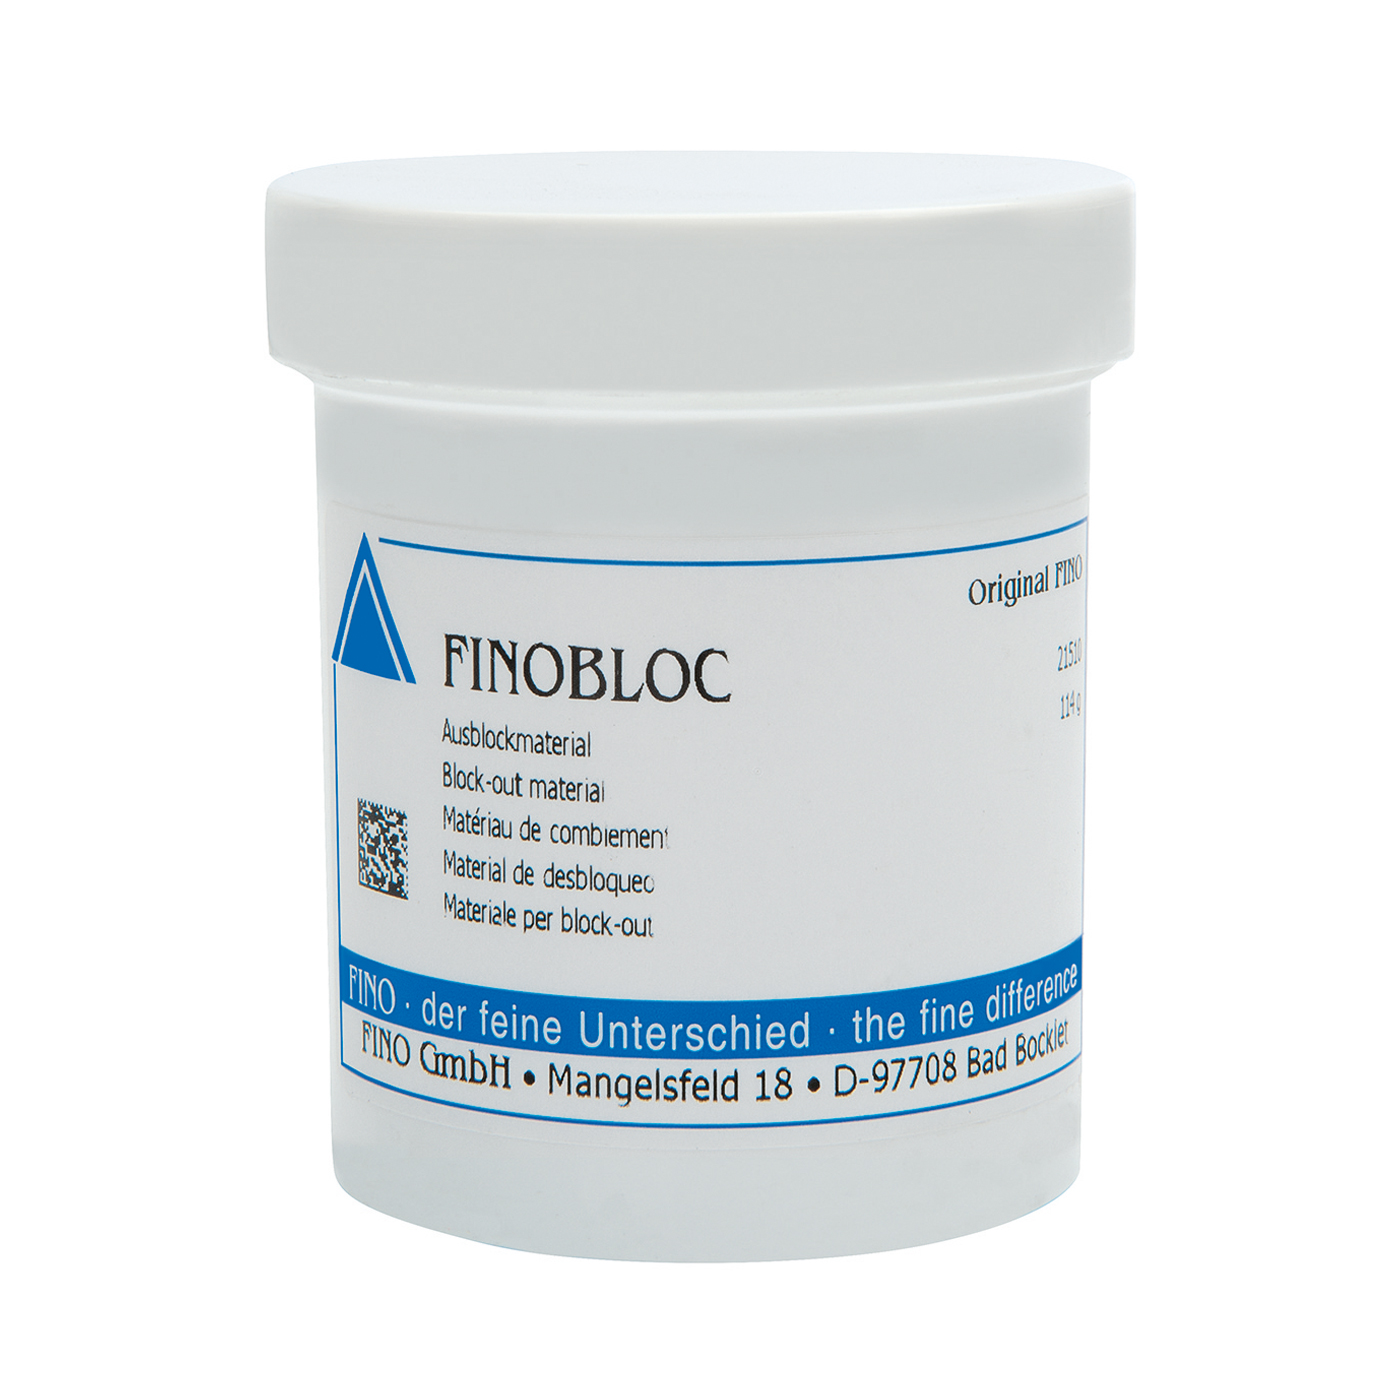 FINOBLOC Ausblockmaterial - 114 g